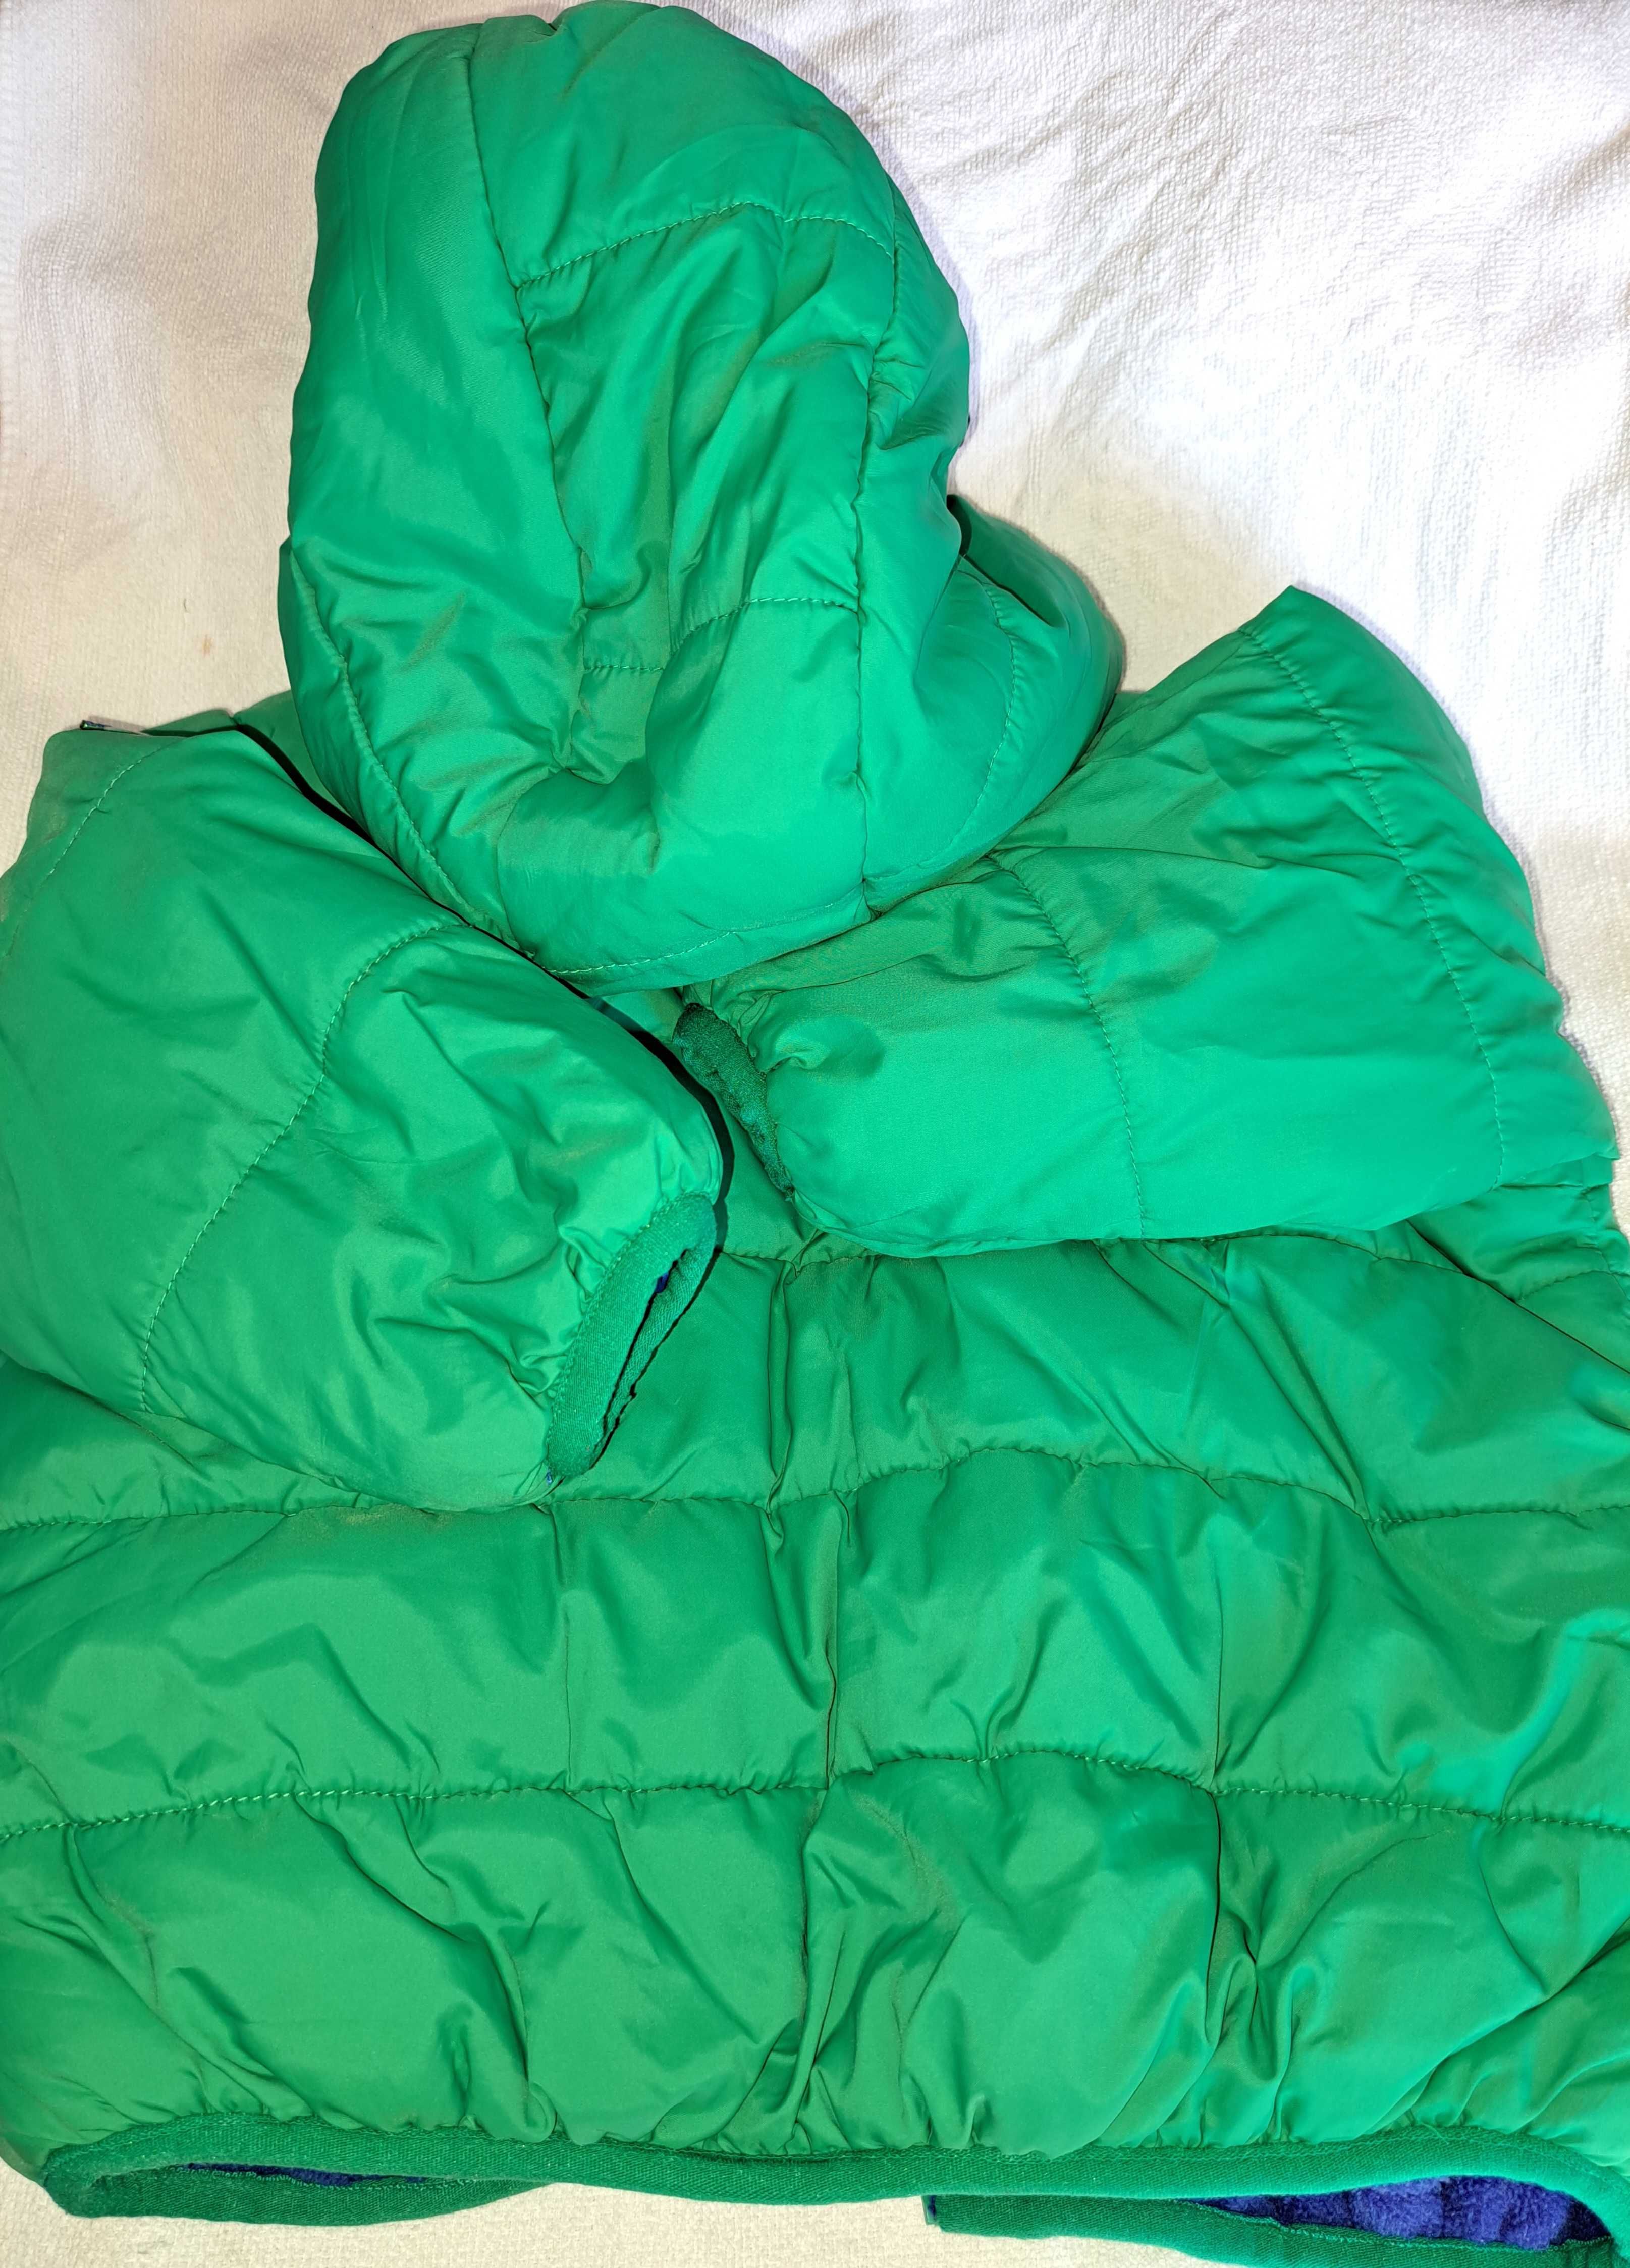 casaco/kispo verde com carapuço